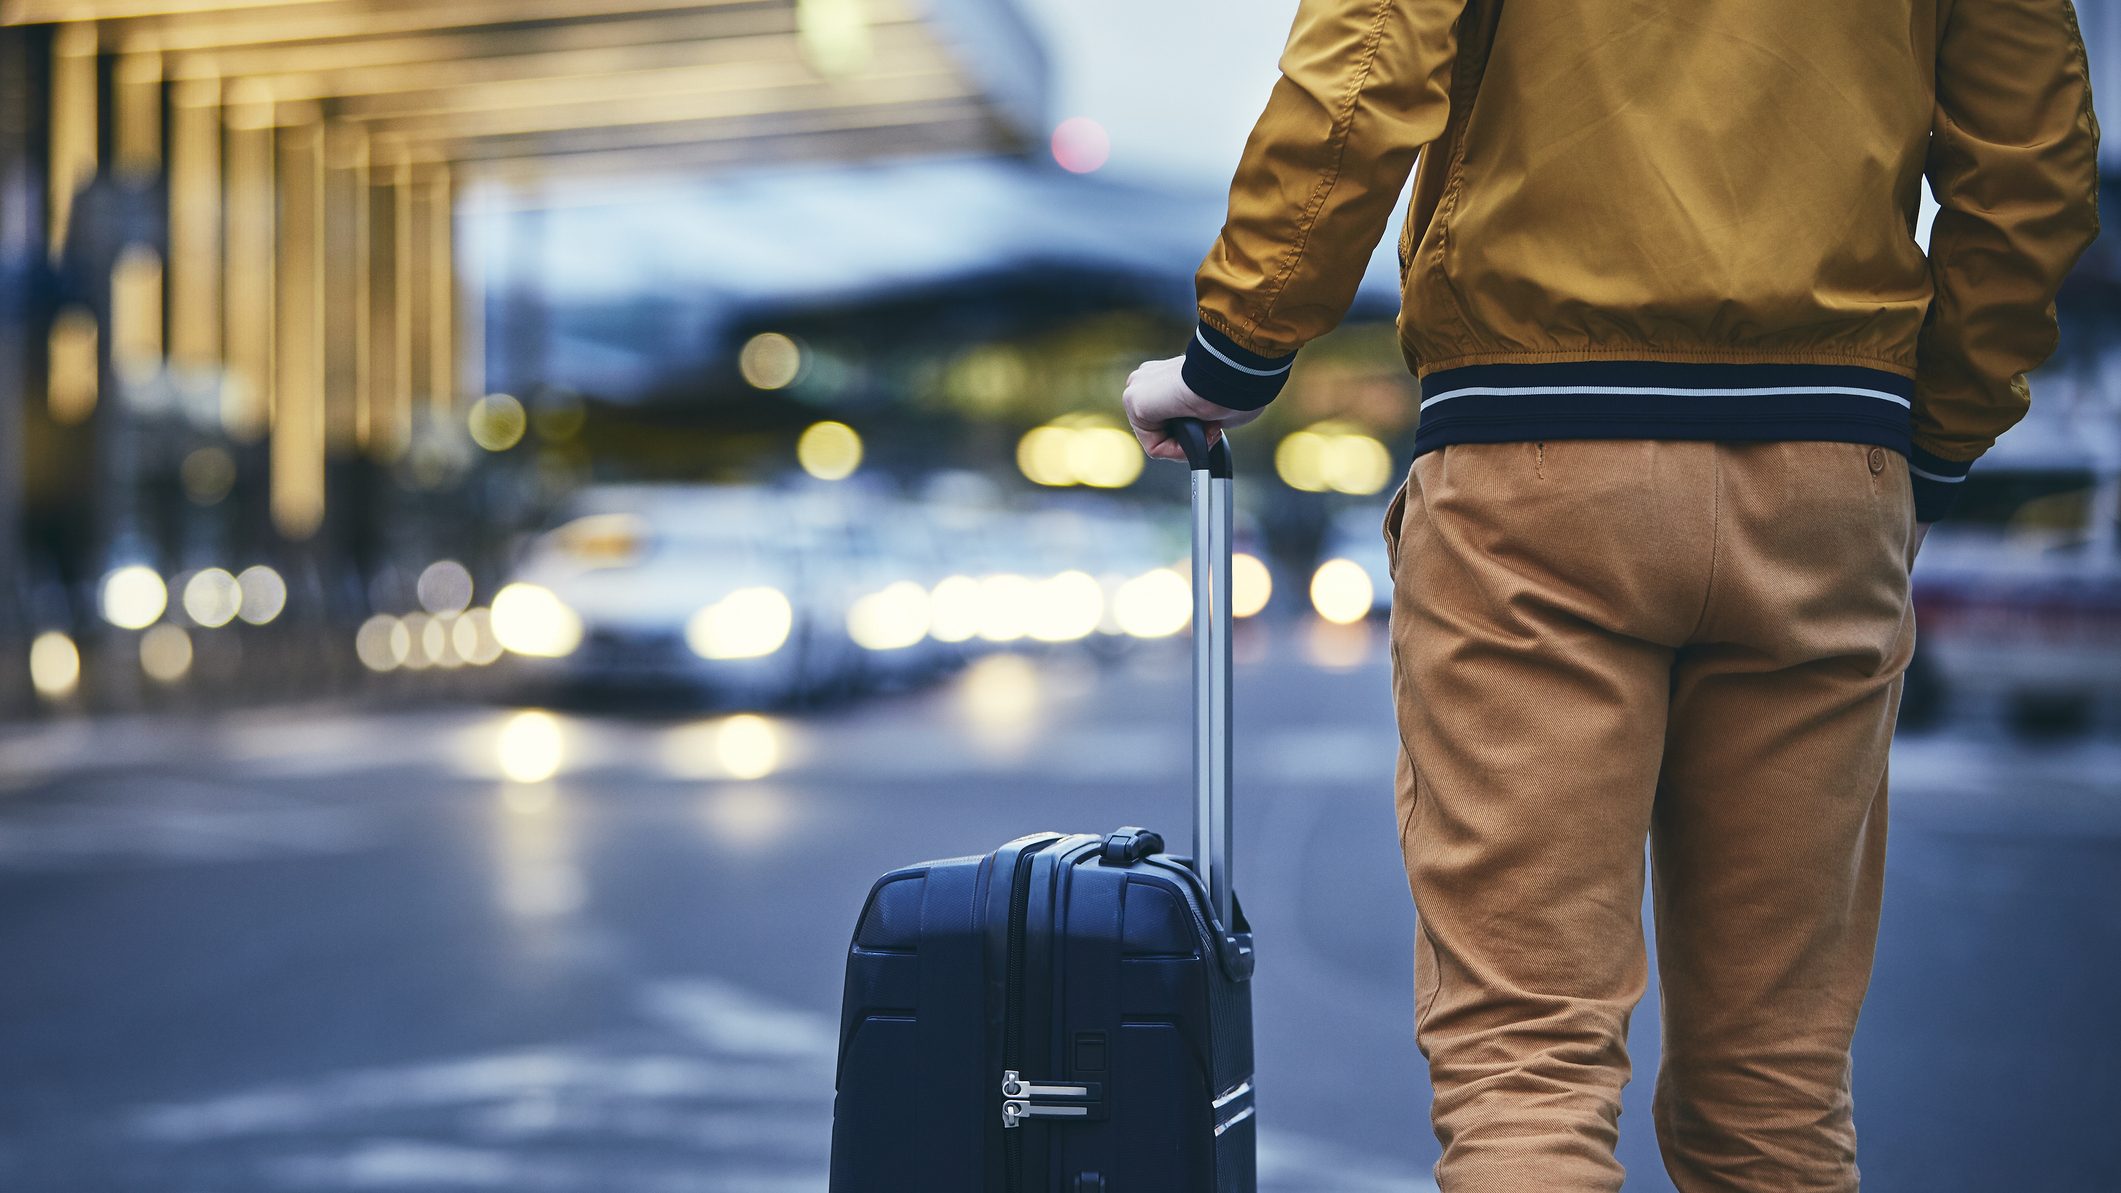 Le gentleman voyageur : faire sa valise pour un voyage d'affaires